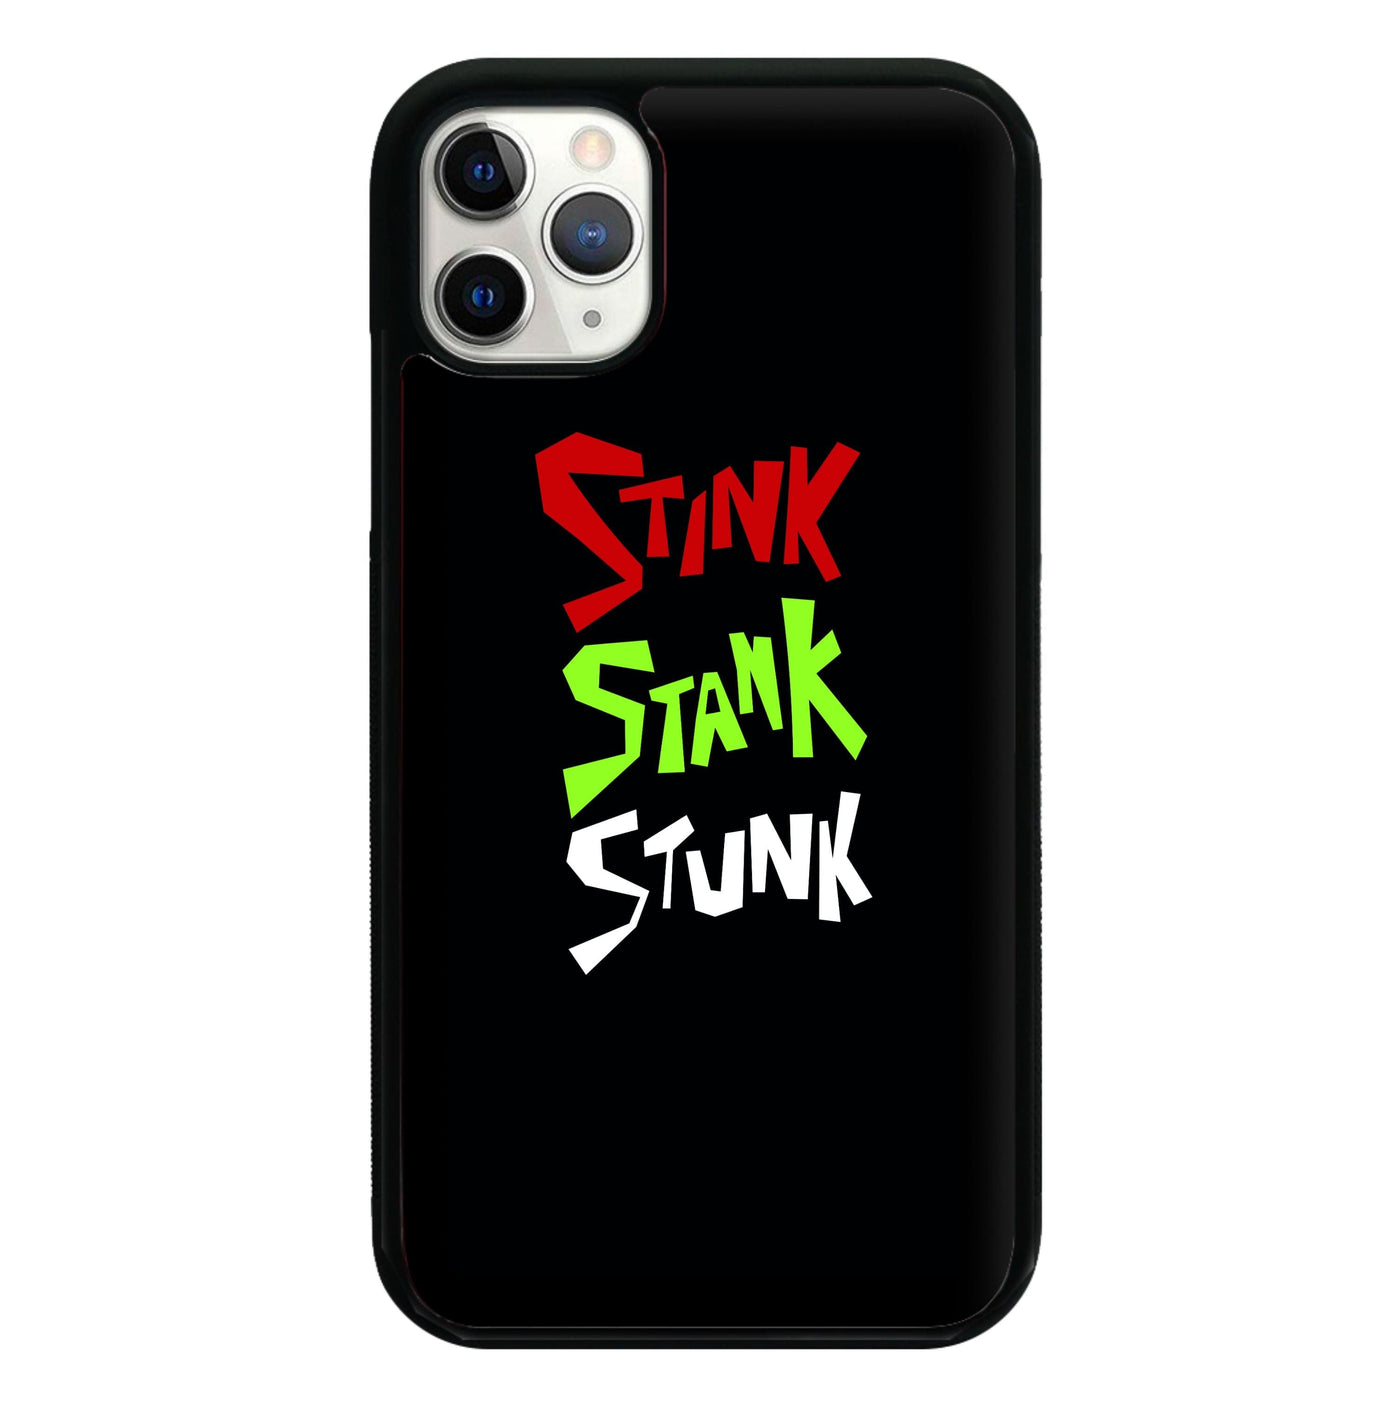 Stink Stank Stunk - Grinch Phone Case